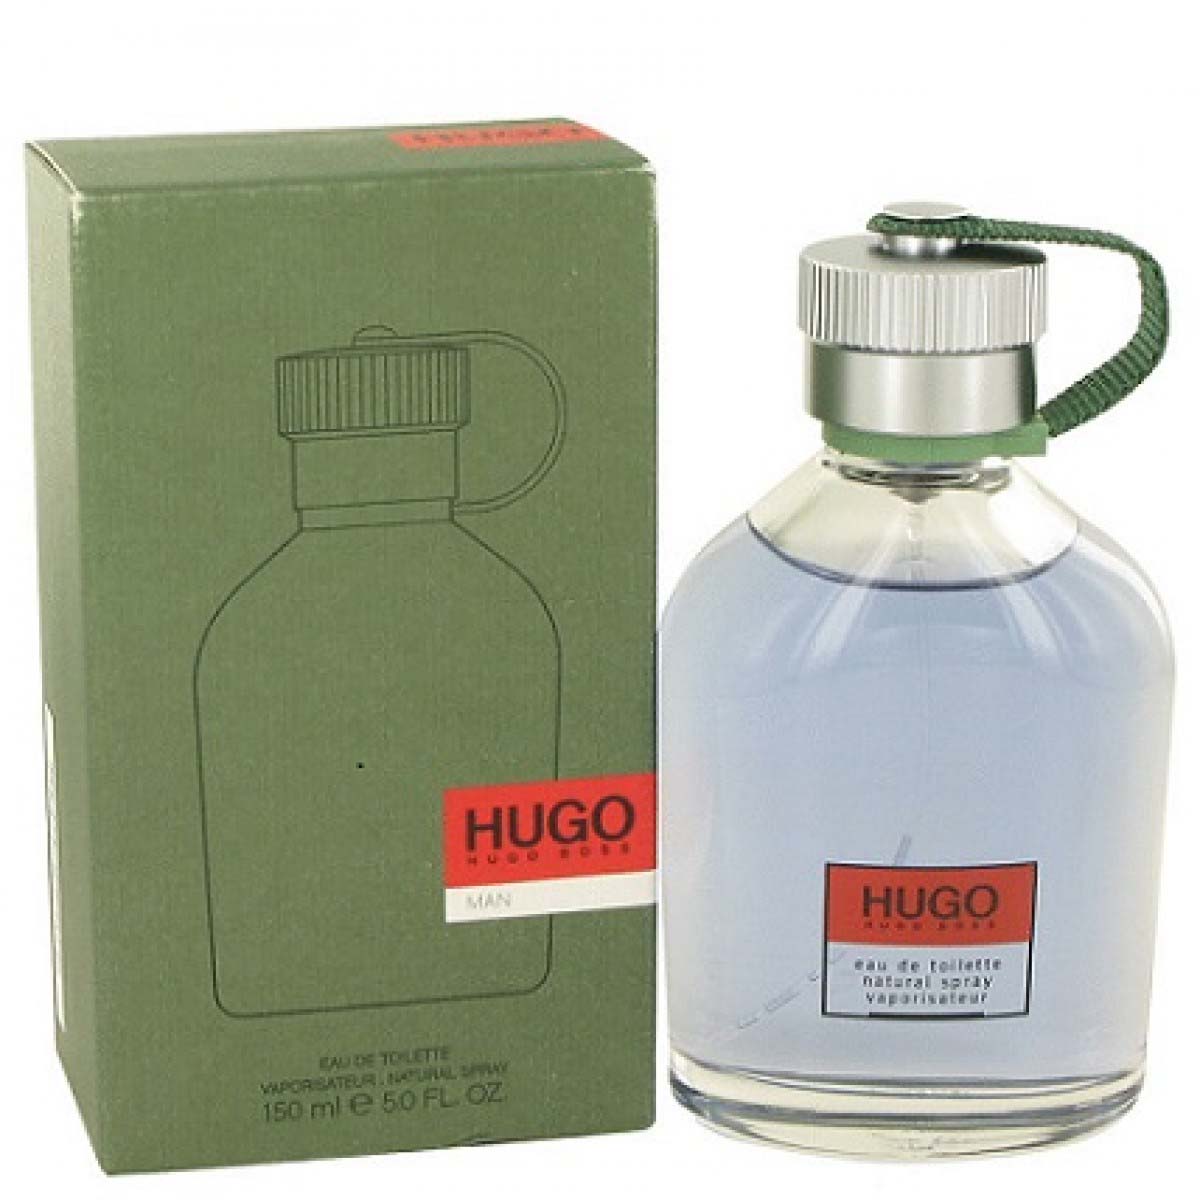 Хьюго босс описание. Hugo Boss Hugo 150ml. Hugo Boss Hugo man 150 мл. Hugo Boss men 150. Hugo Boss Hugo men 100 мл.